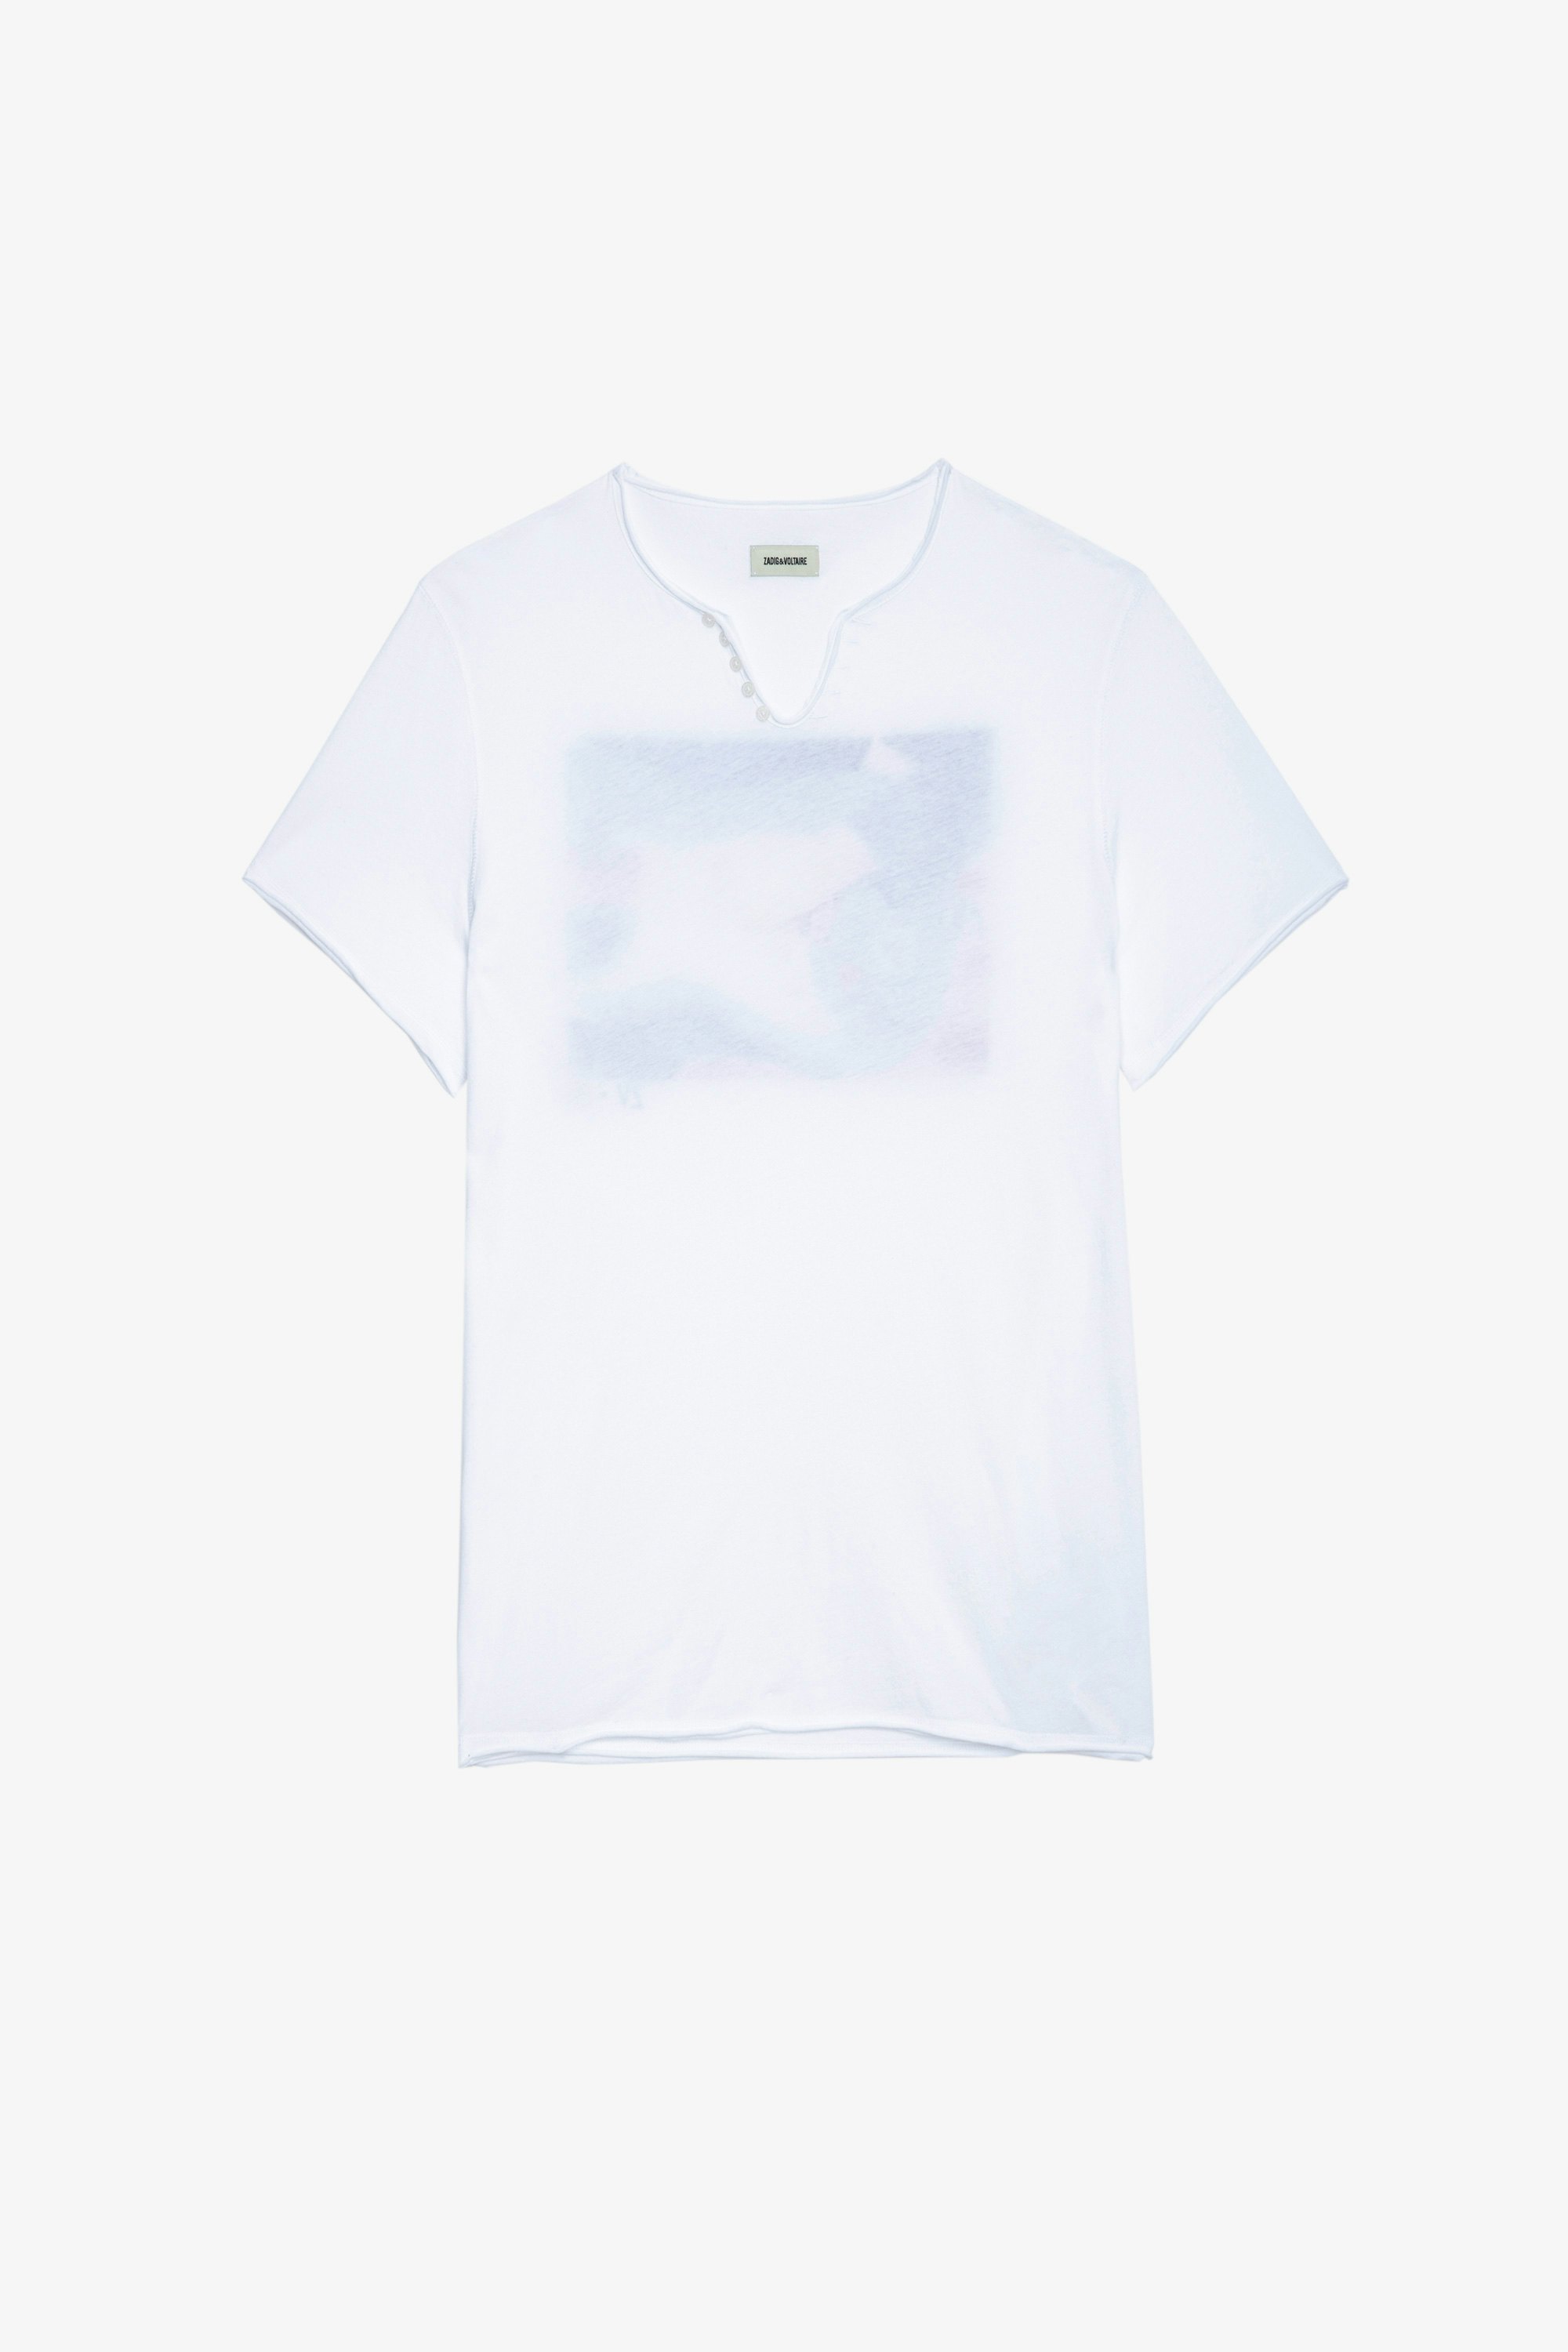 T-Shirt mit Henley-Ausschnitt Monastir Herren-T-Shirt aus weißer Baumwolle mit Fotoprint auf dem Rücken